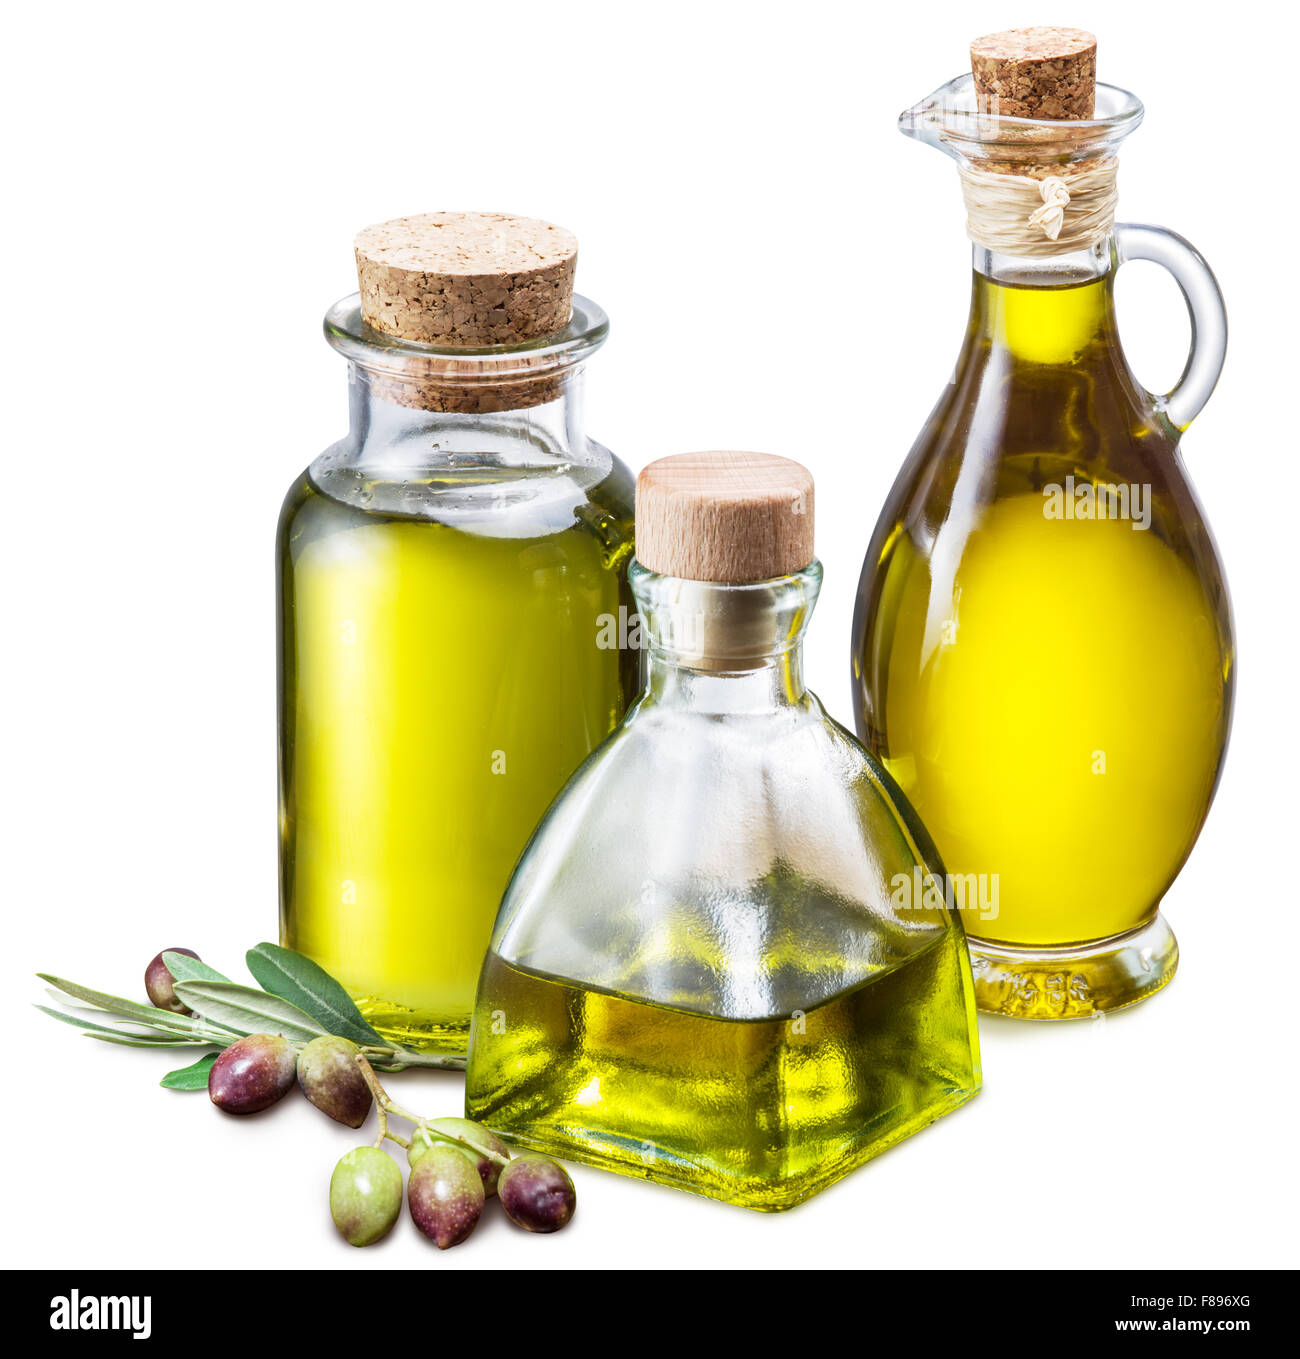 Olivenöl und Beeren auf dem Holztisch. Datei enthält Beschneidungspfade. Stockfoto